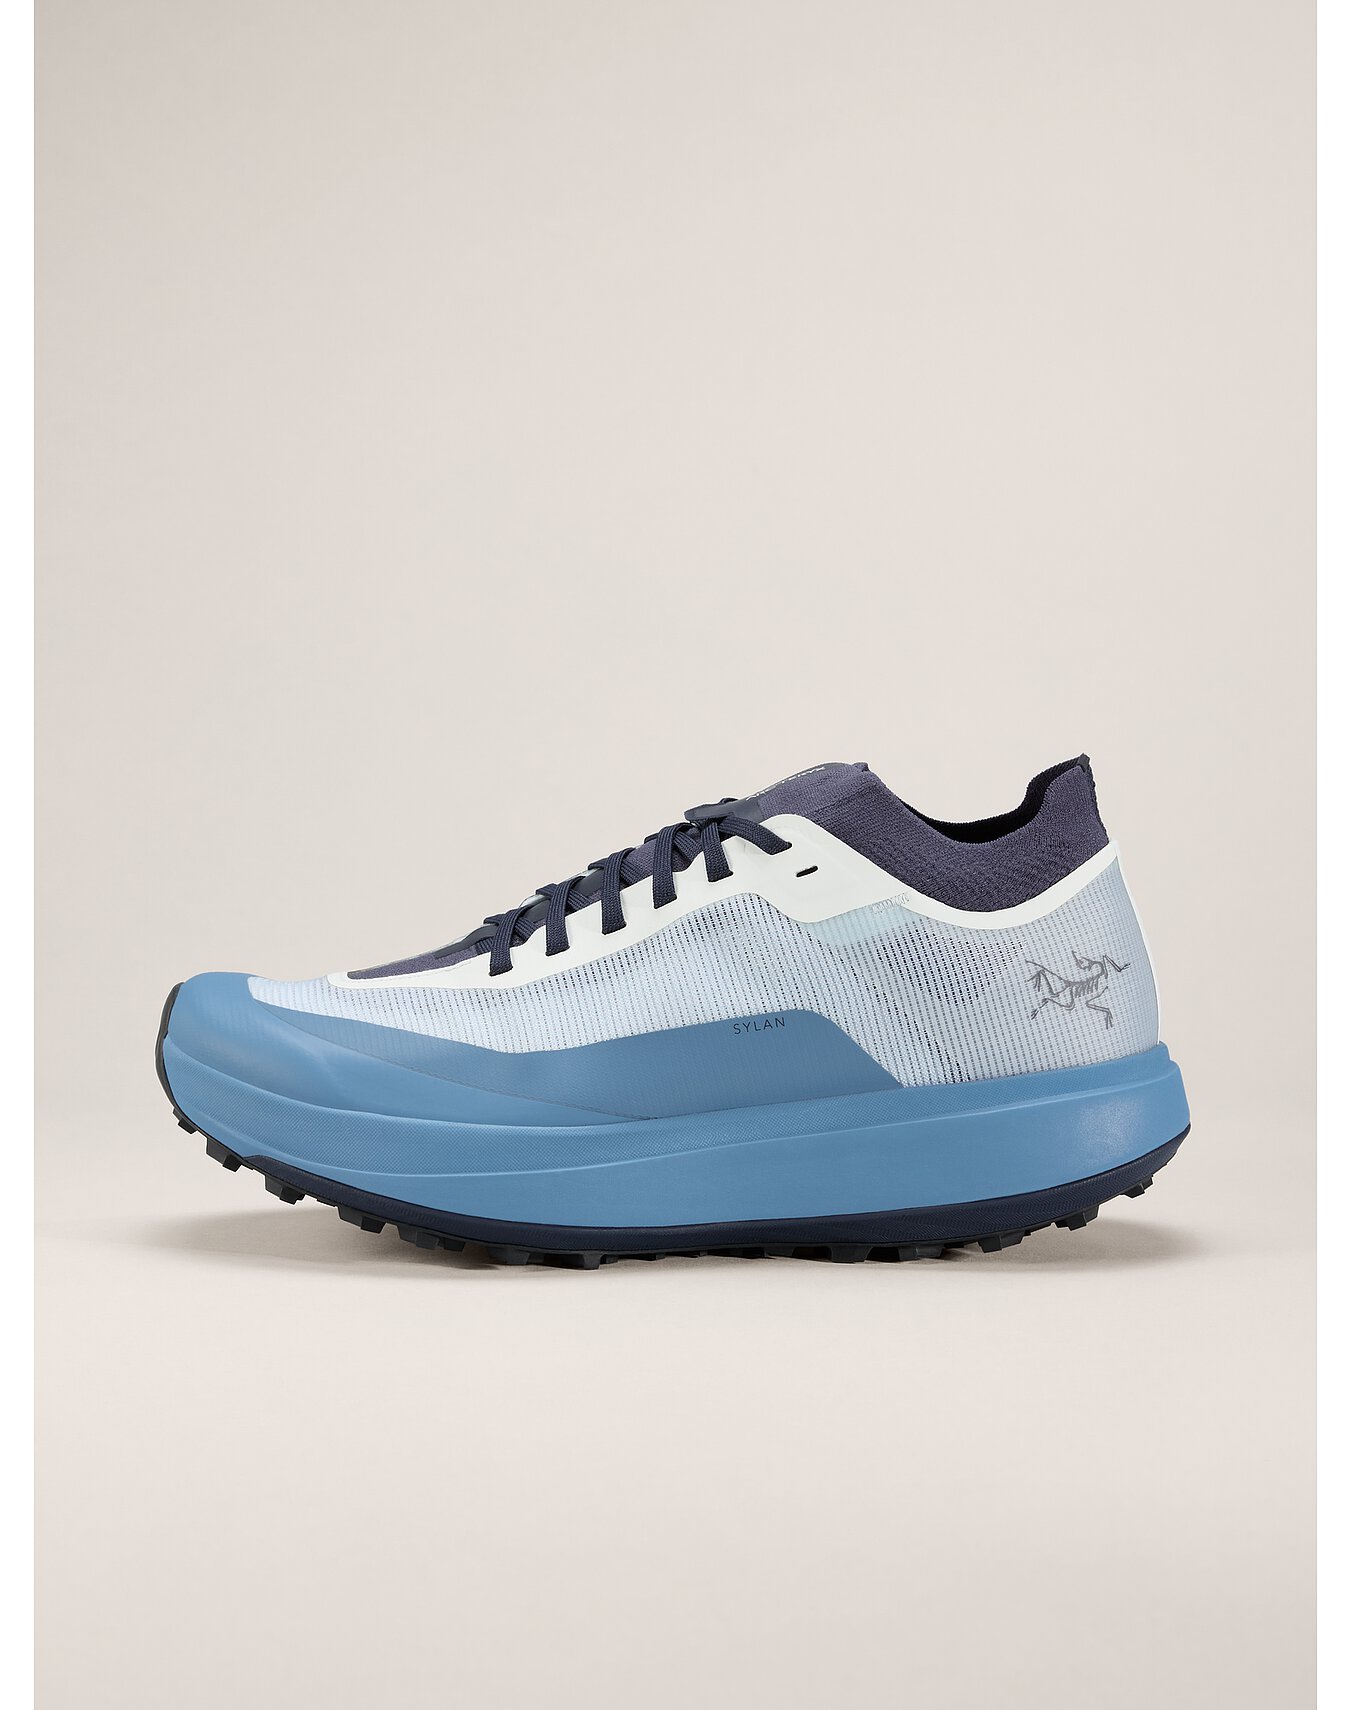 Men's Footwear | Arc'teryx